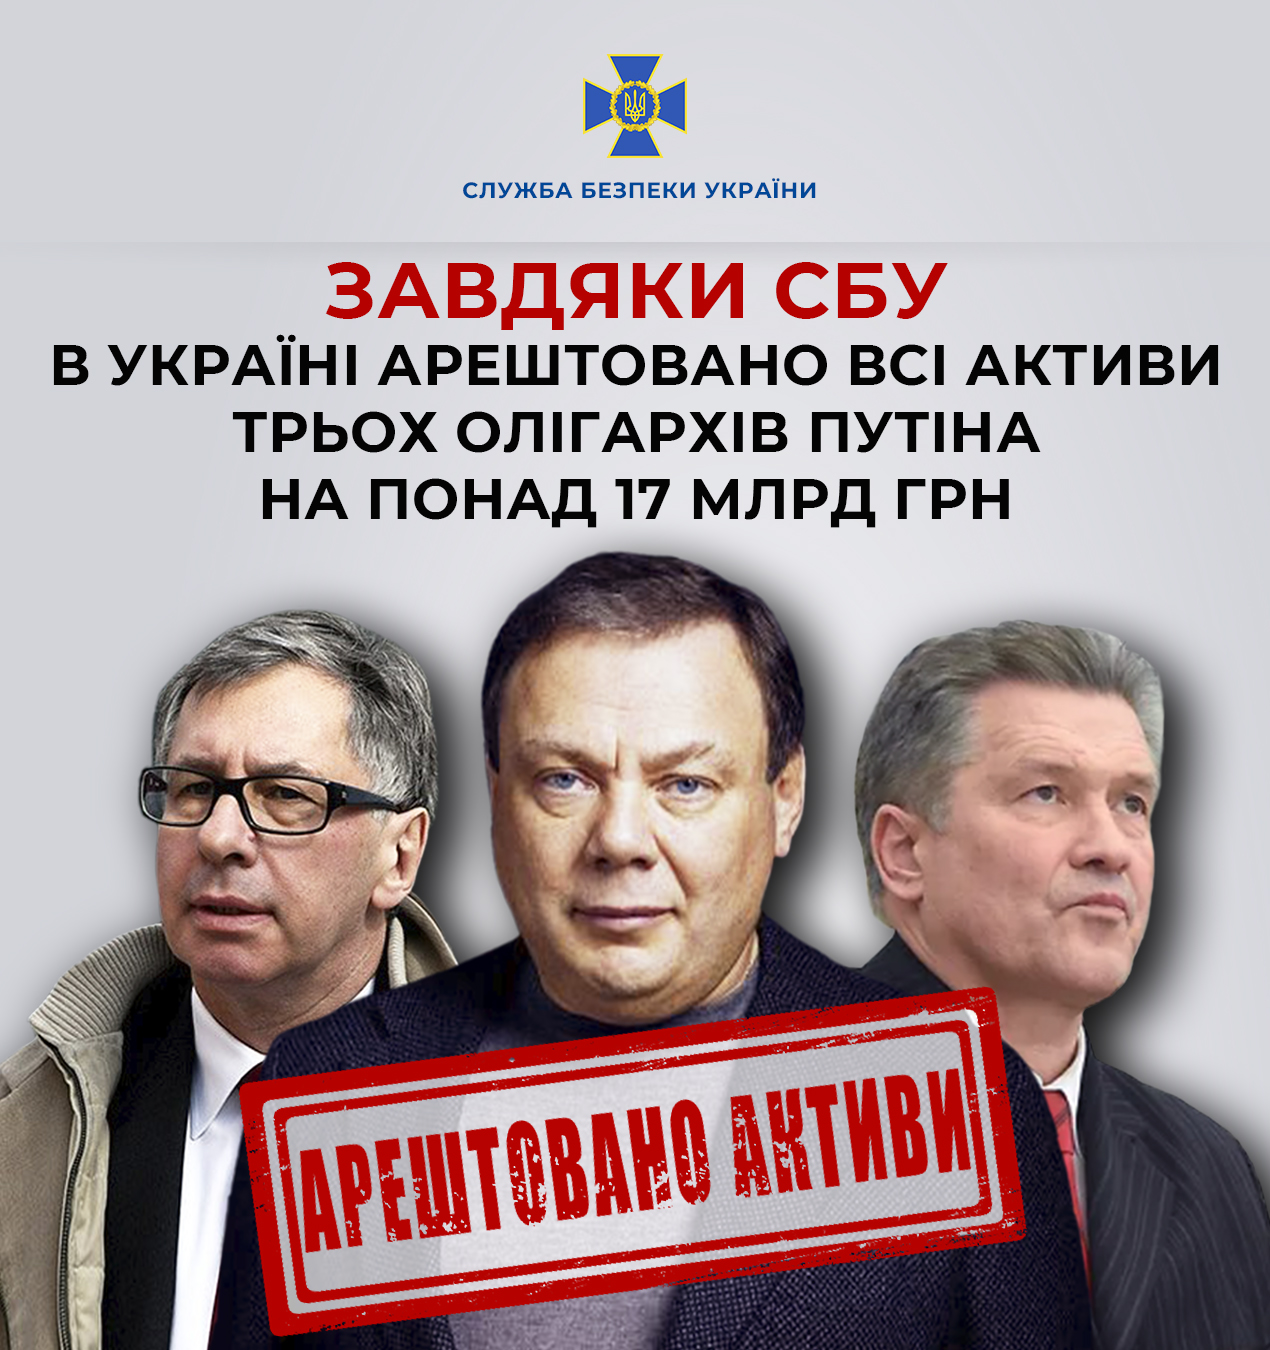 Завдяки СБУ в Україні арештовано всі активи трьох олігархів путіна на понад 17 млрд грн